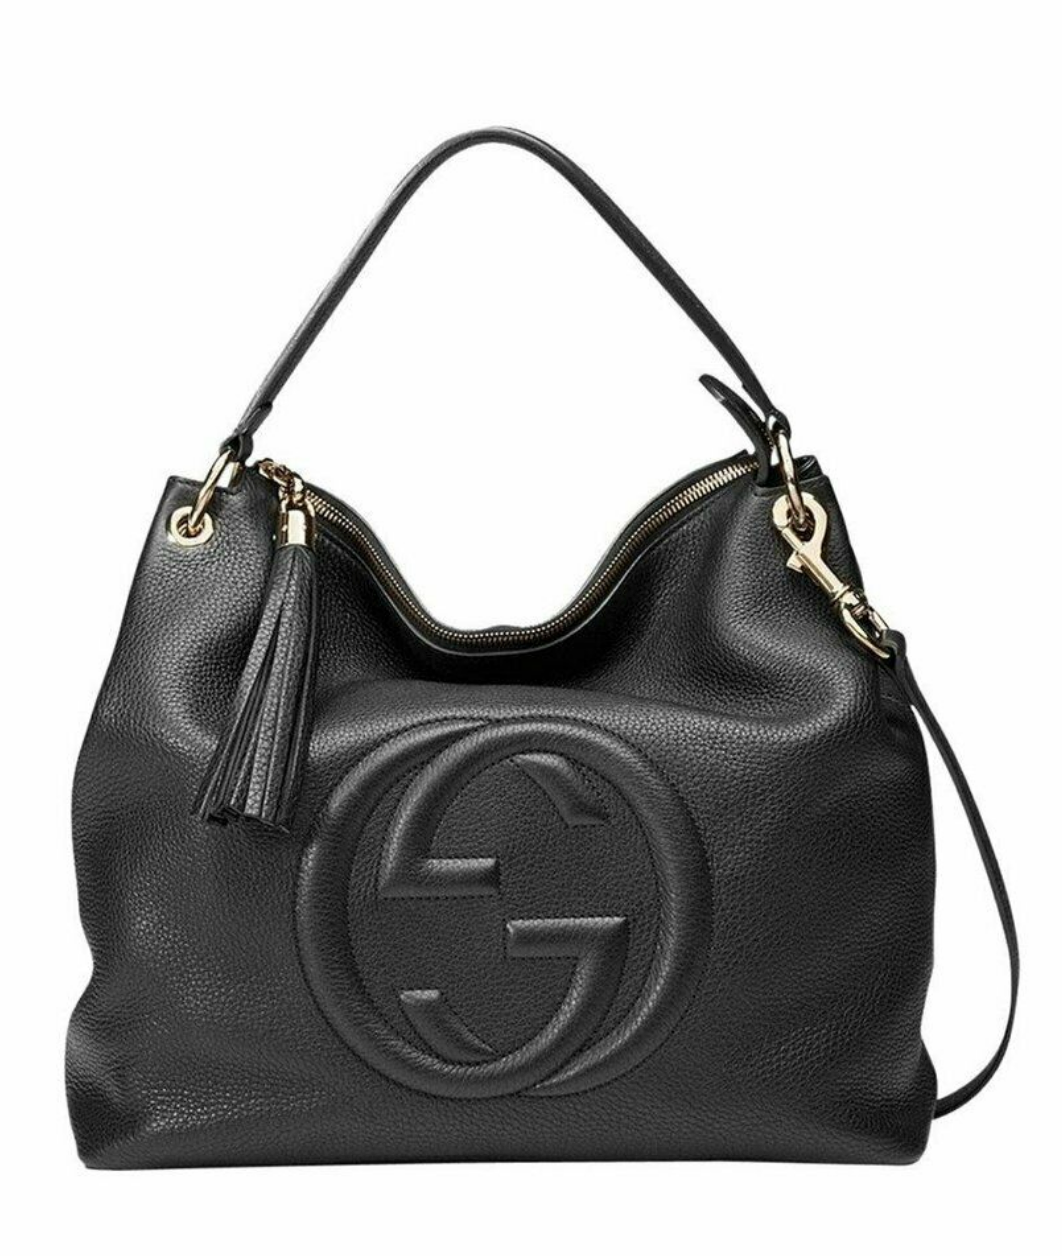 Gucci Soho Shoulder bag 401797